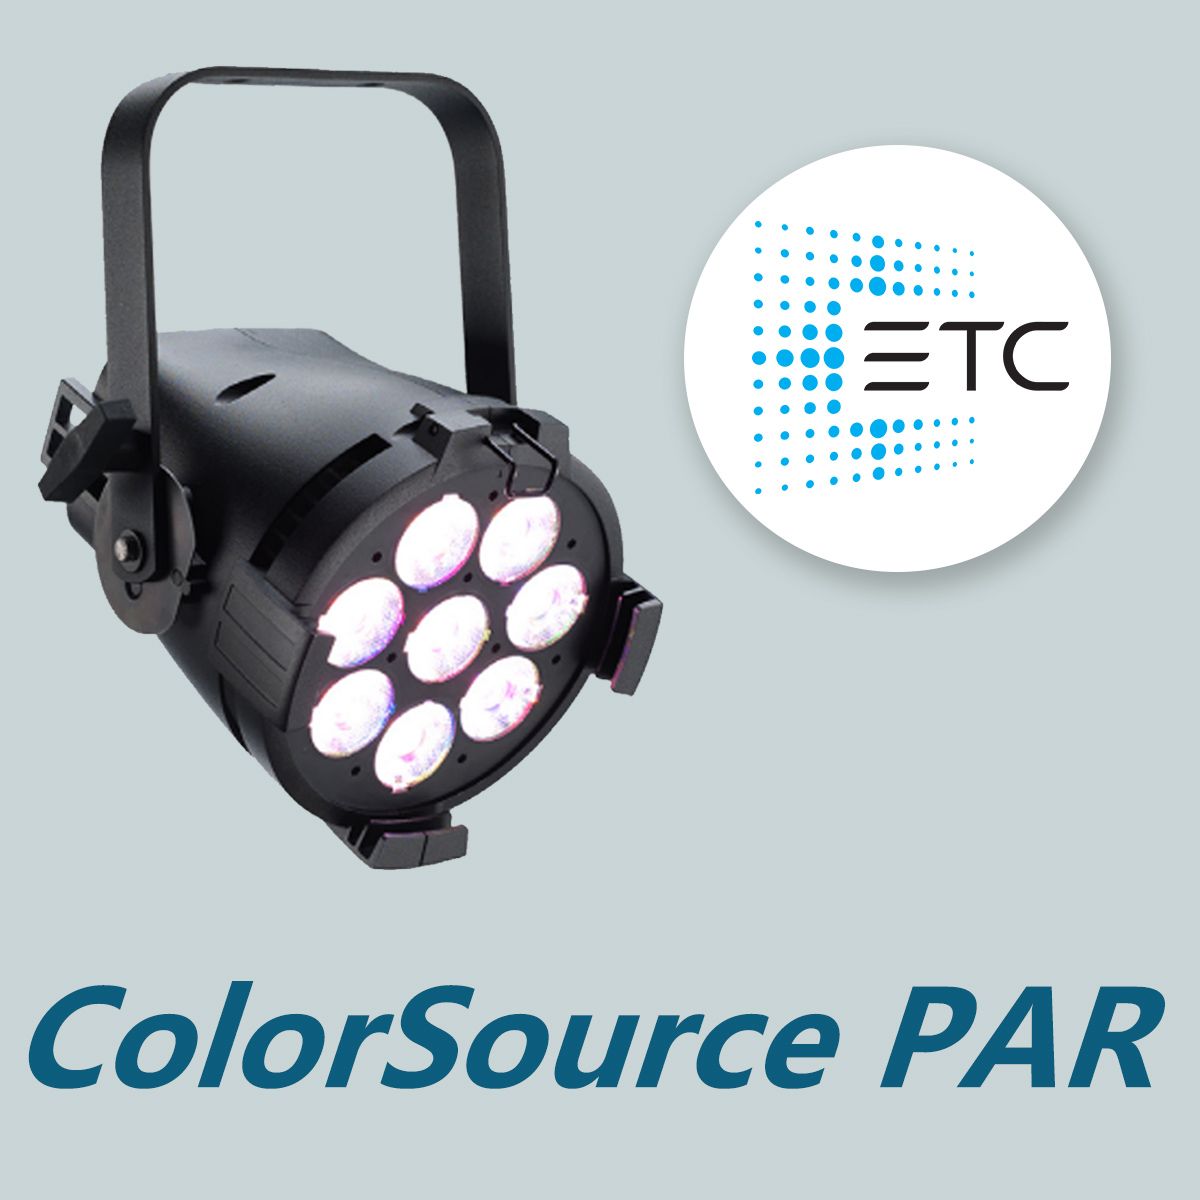 ETC ColorSource PAR